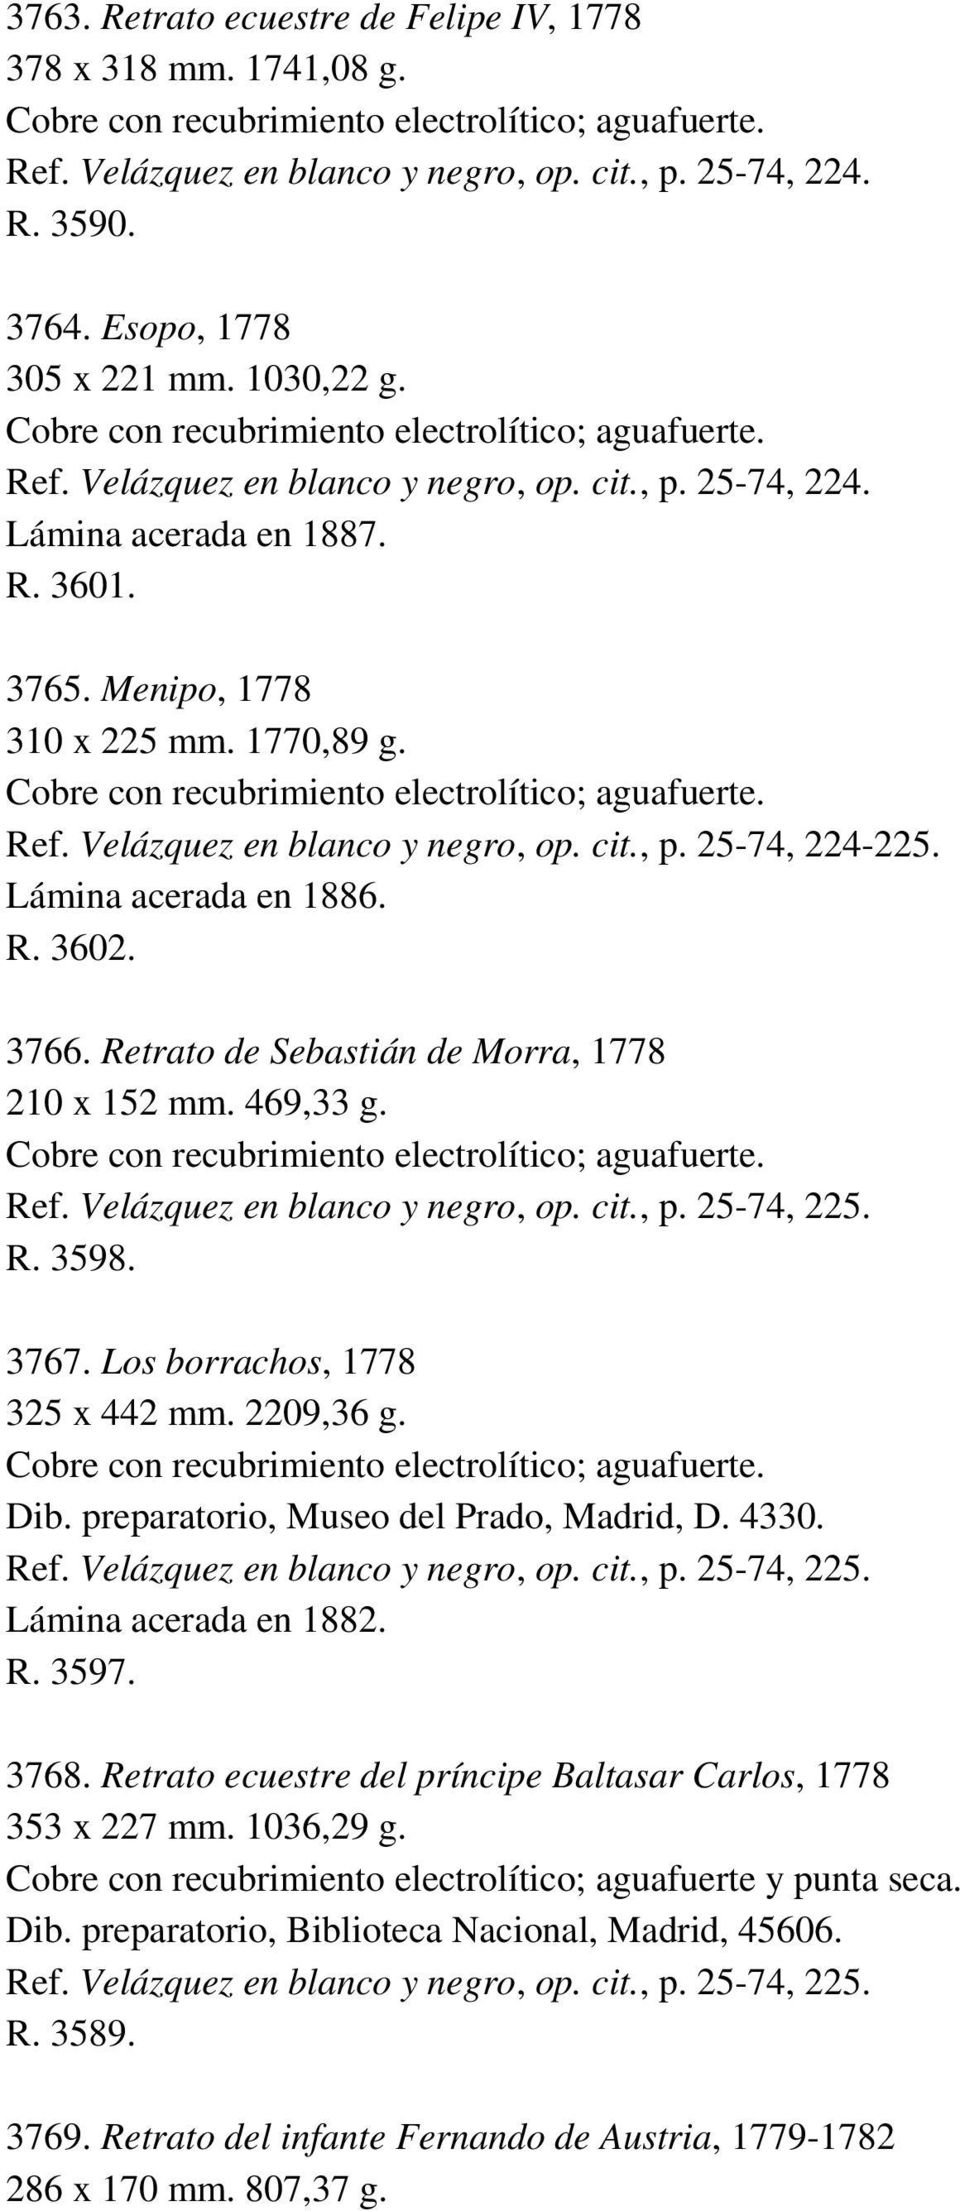 Menipo, 1778 310 x 225 mm. 1770,89 g. Cobre con recubrimiento electrolítico; aguafuerte. Ref. Velázquez en blanco y negro, op. cit., p. 25-74, 224-225. Lámina acerada en 1886. R. 3602. 3766.